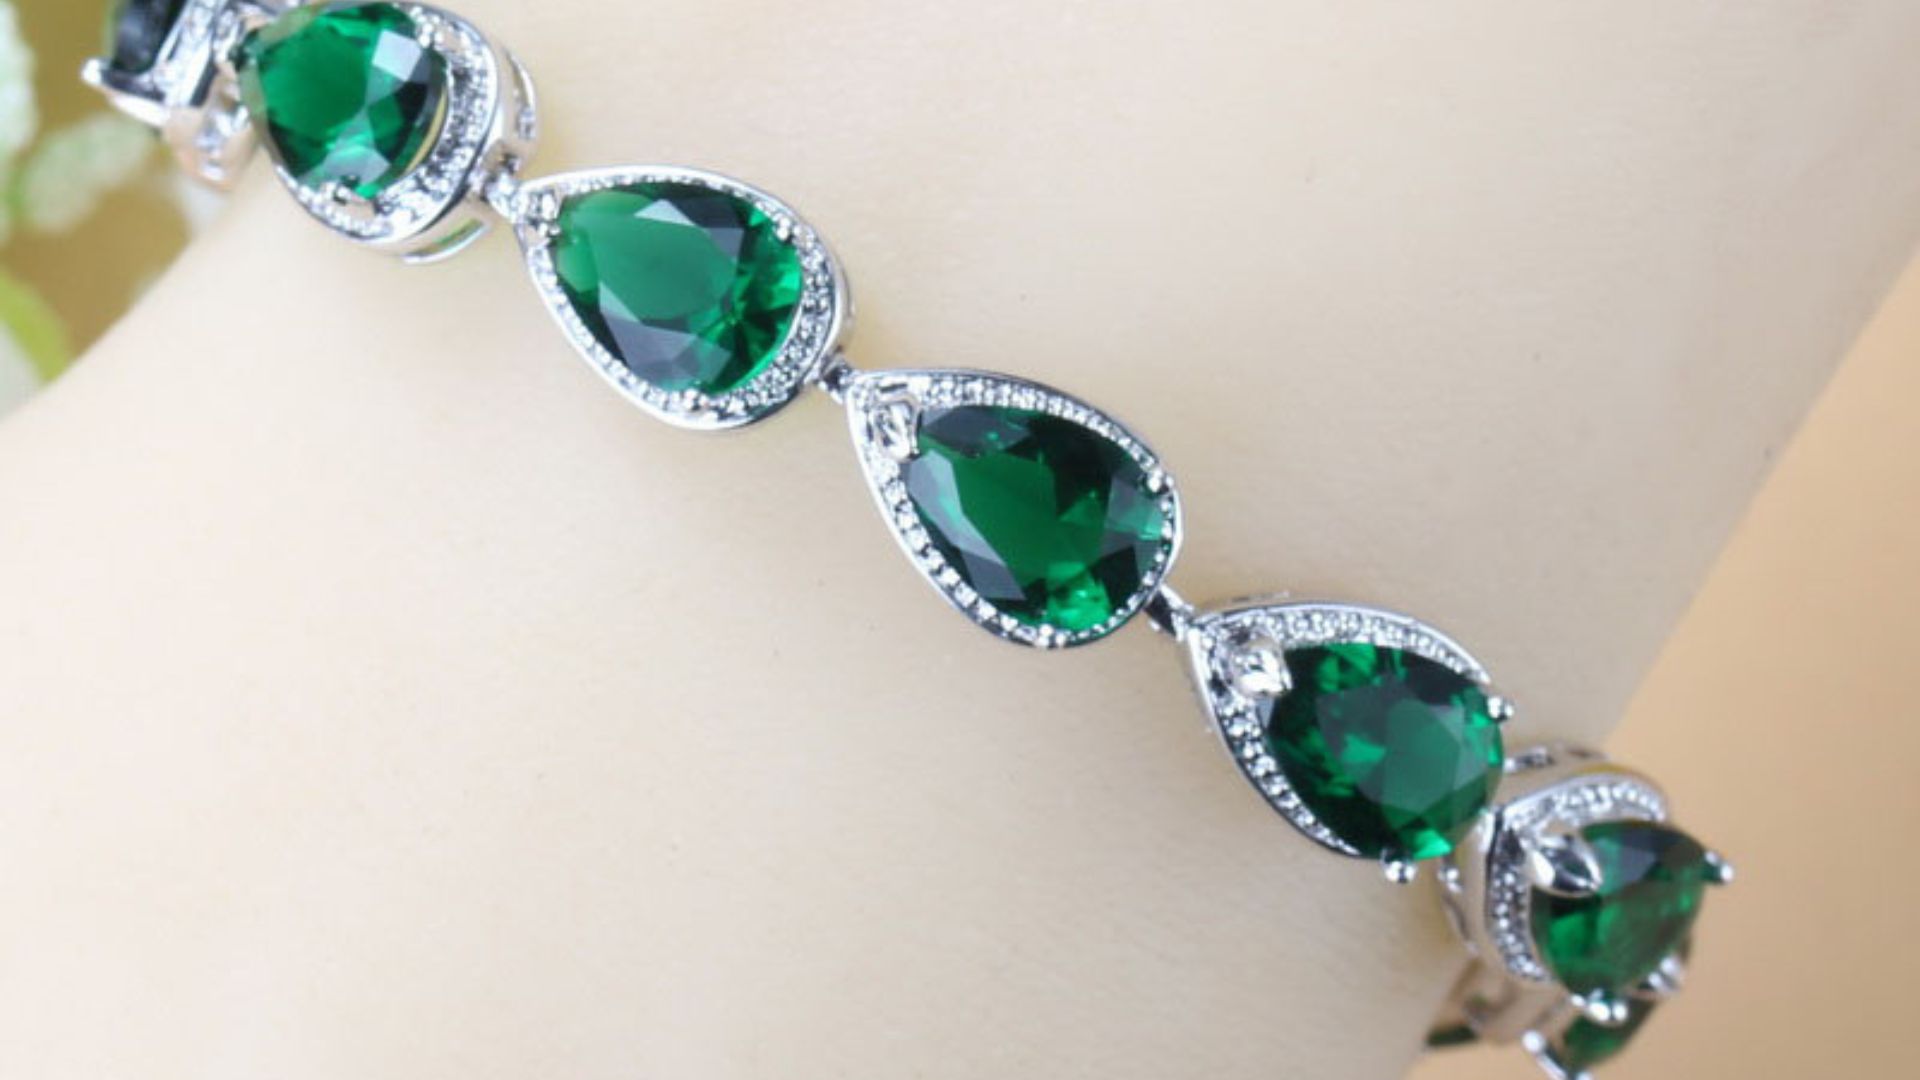 Zircon Bracelets - A Timeless And Elegant Jewelry Piece